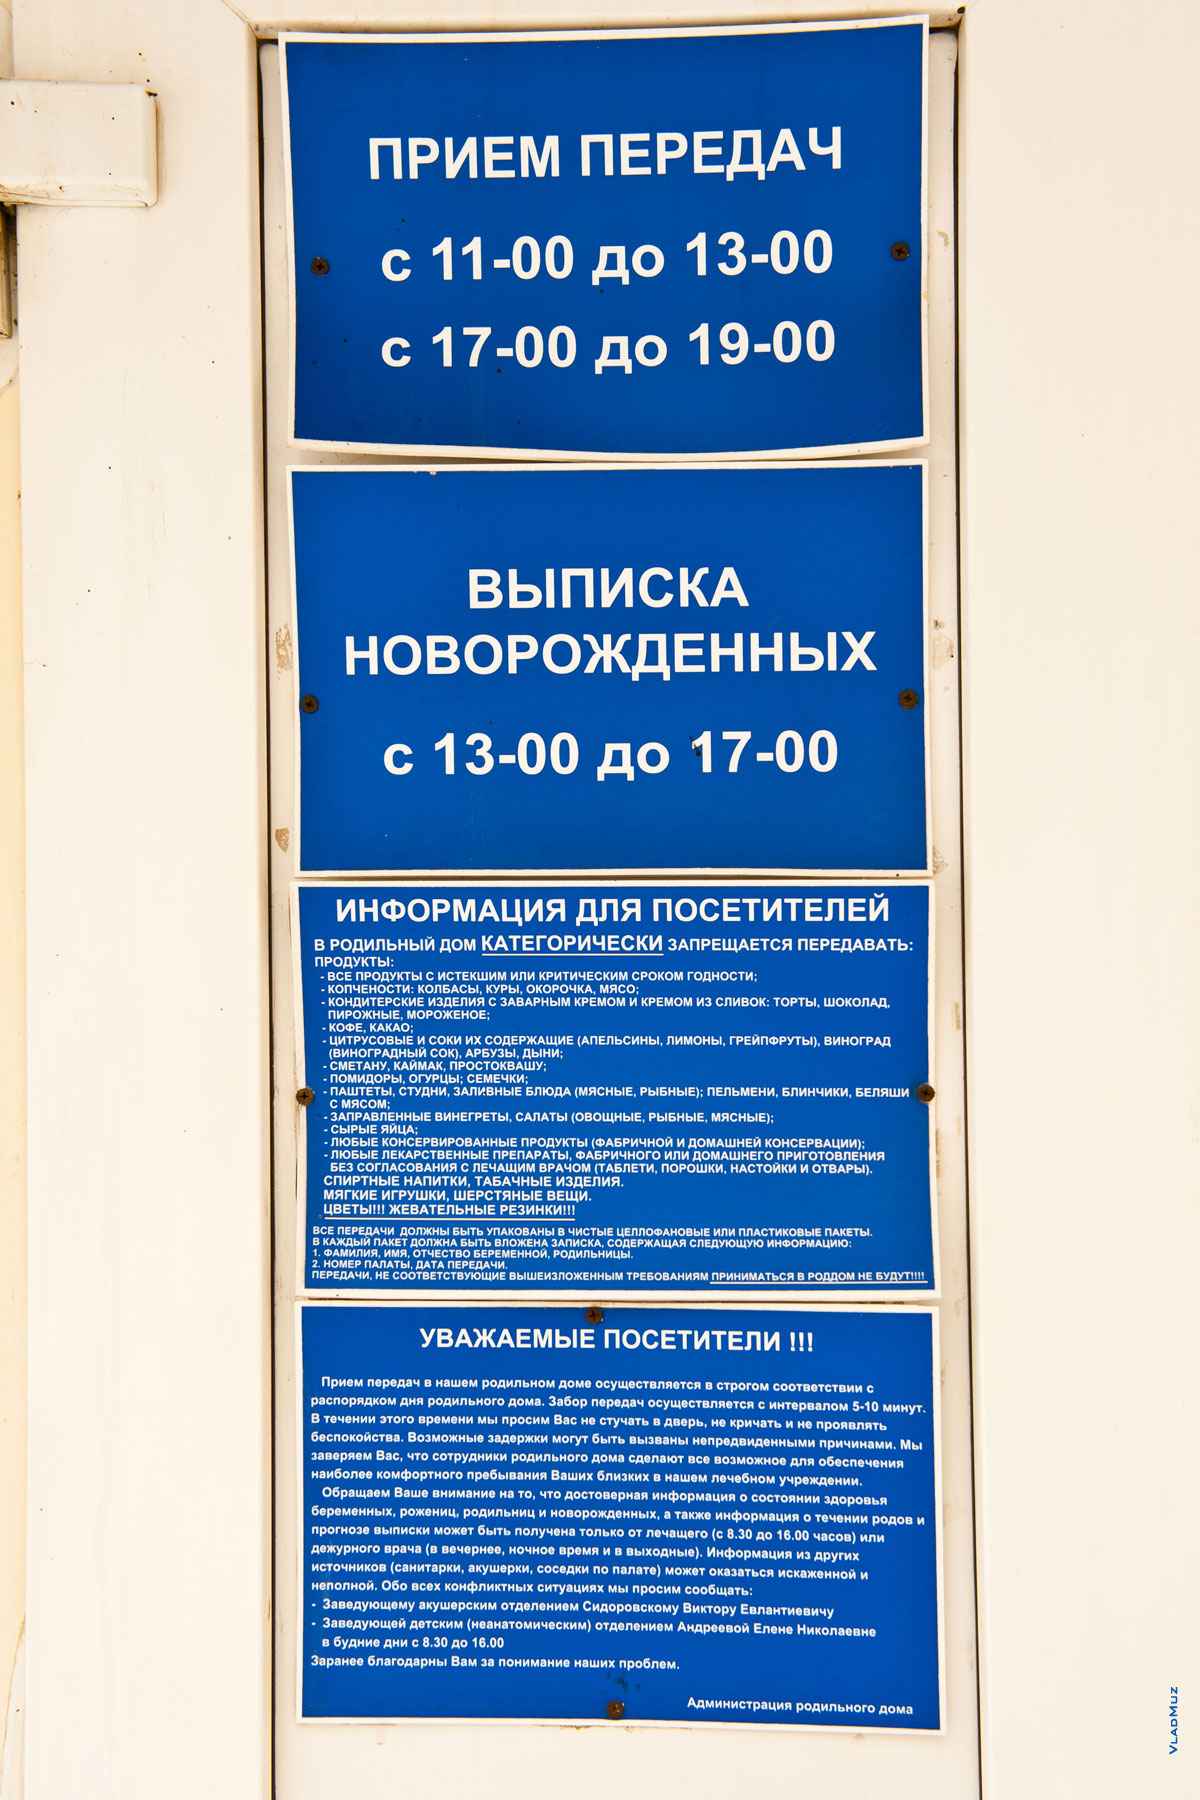 Фото режимов приема передач и выписки новорожденных из роддома в Новочеркасске и другая информация